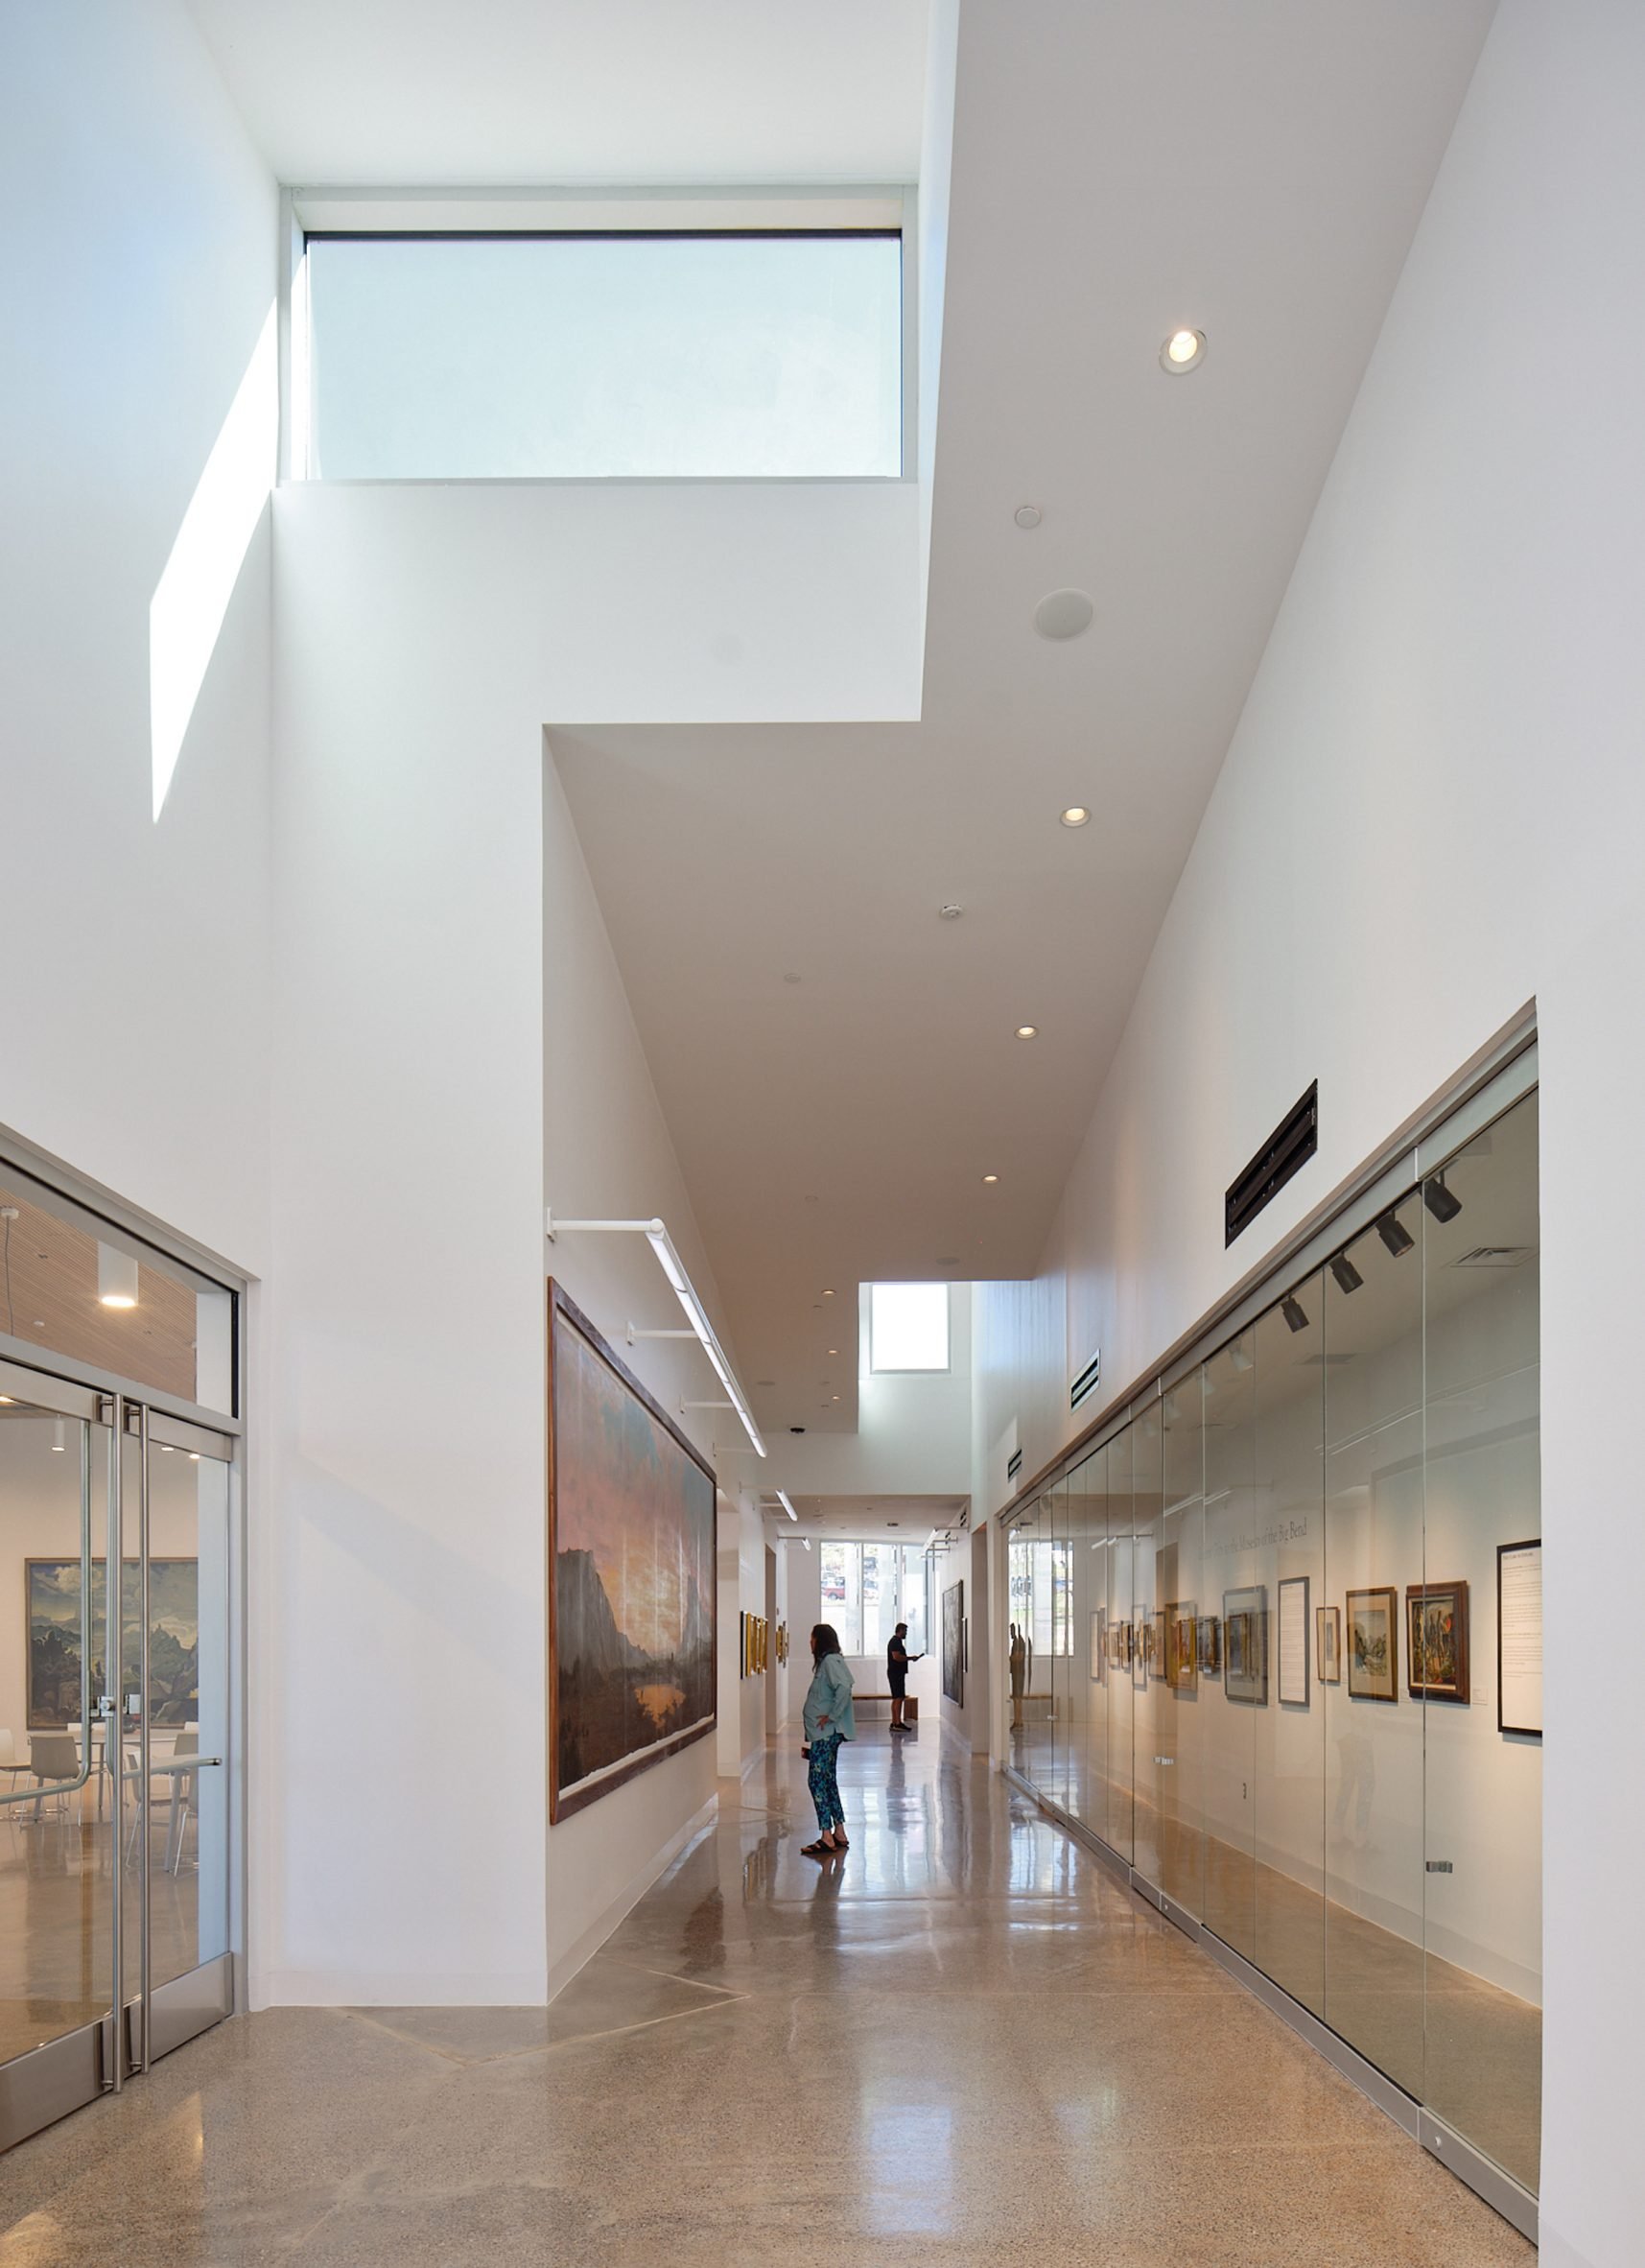 Lightwell in museum hallway